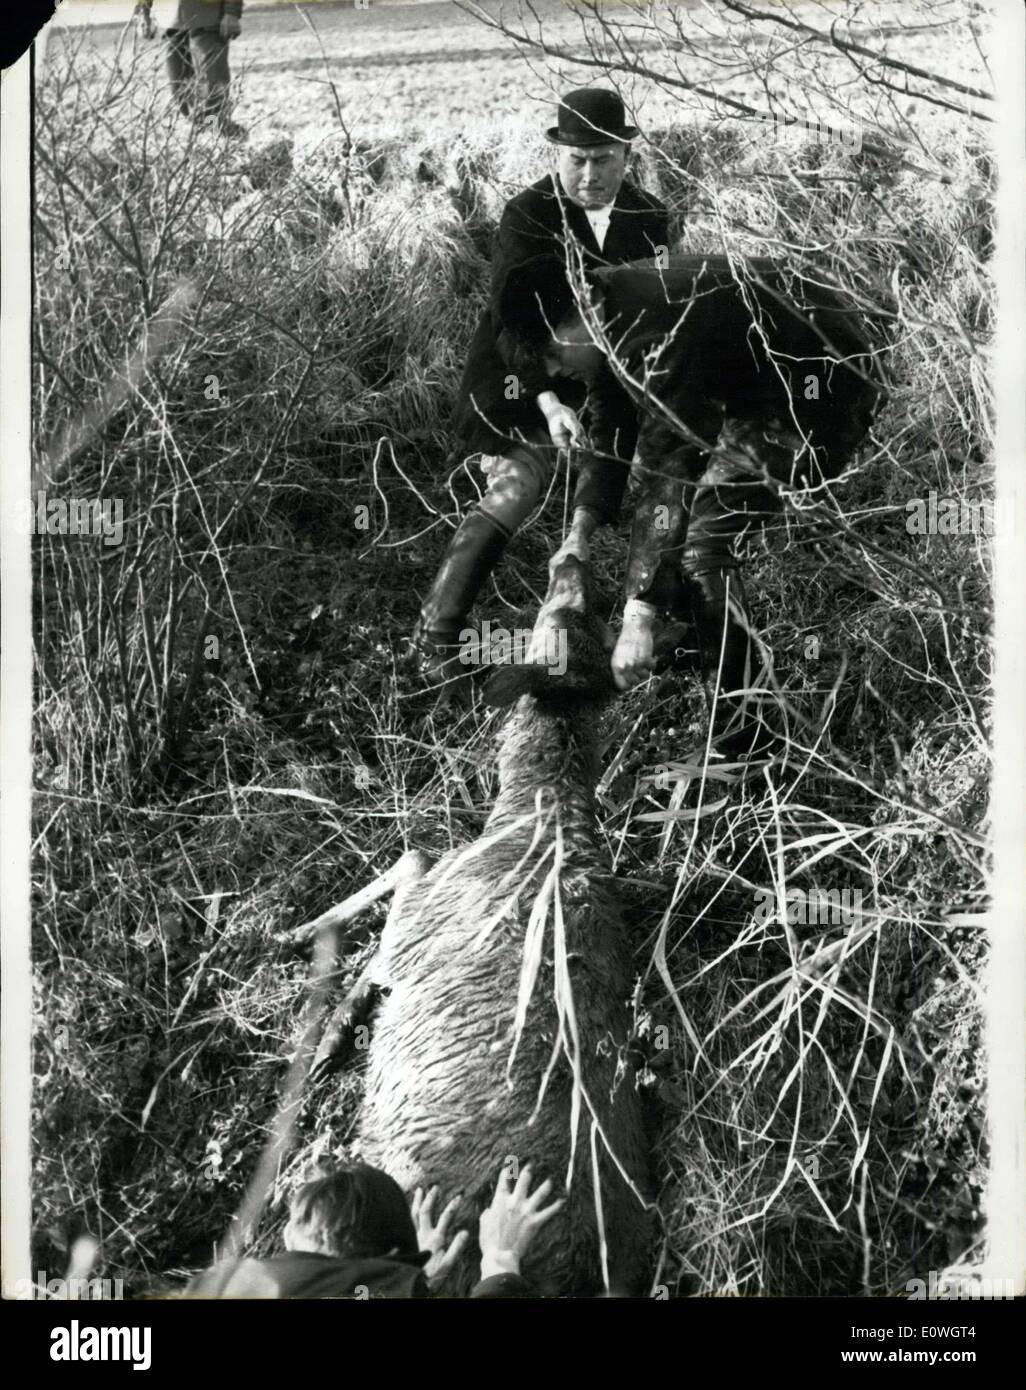 12. Dezember 1962 - ist der Hirsch zweimal ein Jahr Tortur In Norwich; Zweimal im Jahr die Norwich Staghounds Jagd aus einer Farm spezielle sammelt '' gekarrt "Hirsch die halb zahmen und daher ideal für die Art der Arbeit, dass der Hund Meister, Colonel Brian Gooch im Sinn hat. Dies ist der Hirsch als Köder verwenden und führen sie bis zu dem Punkt, wo das verängstigte Tier lief nicht weiter gehen und findet Zuflucht in einem unzugänglichen Ort warten auf die Ikll nie kommt. D. h. wenn Col Stockfoto